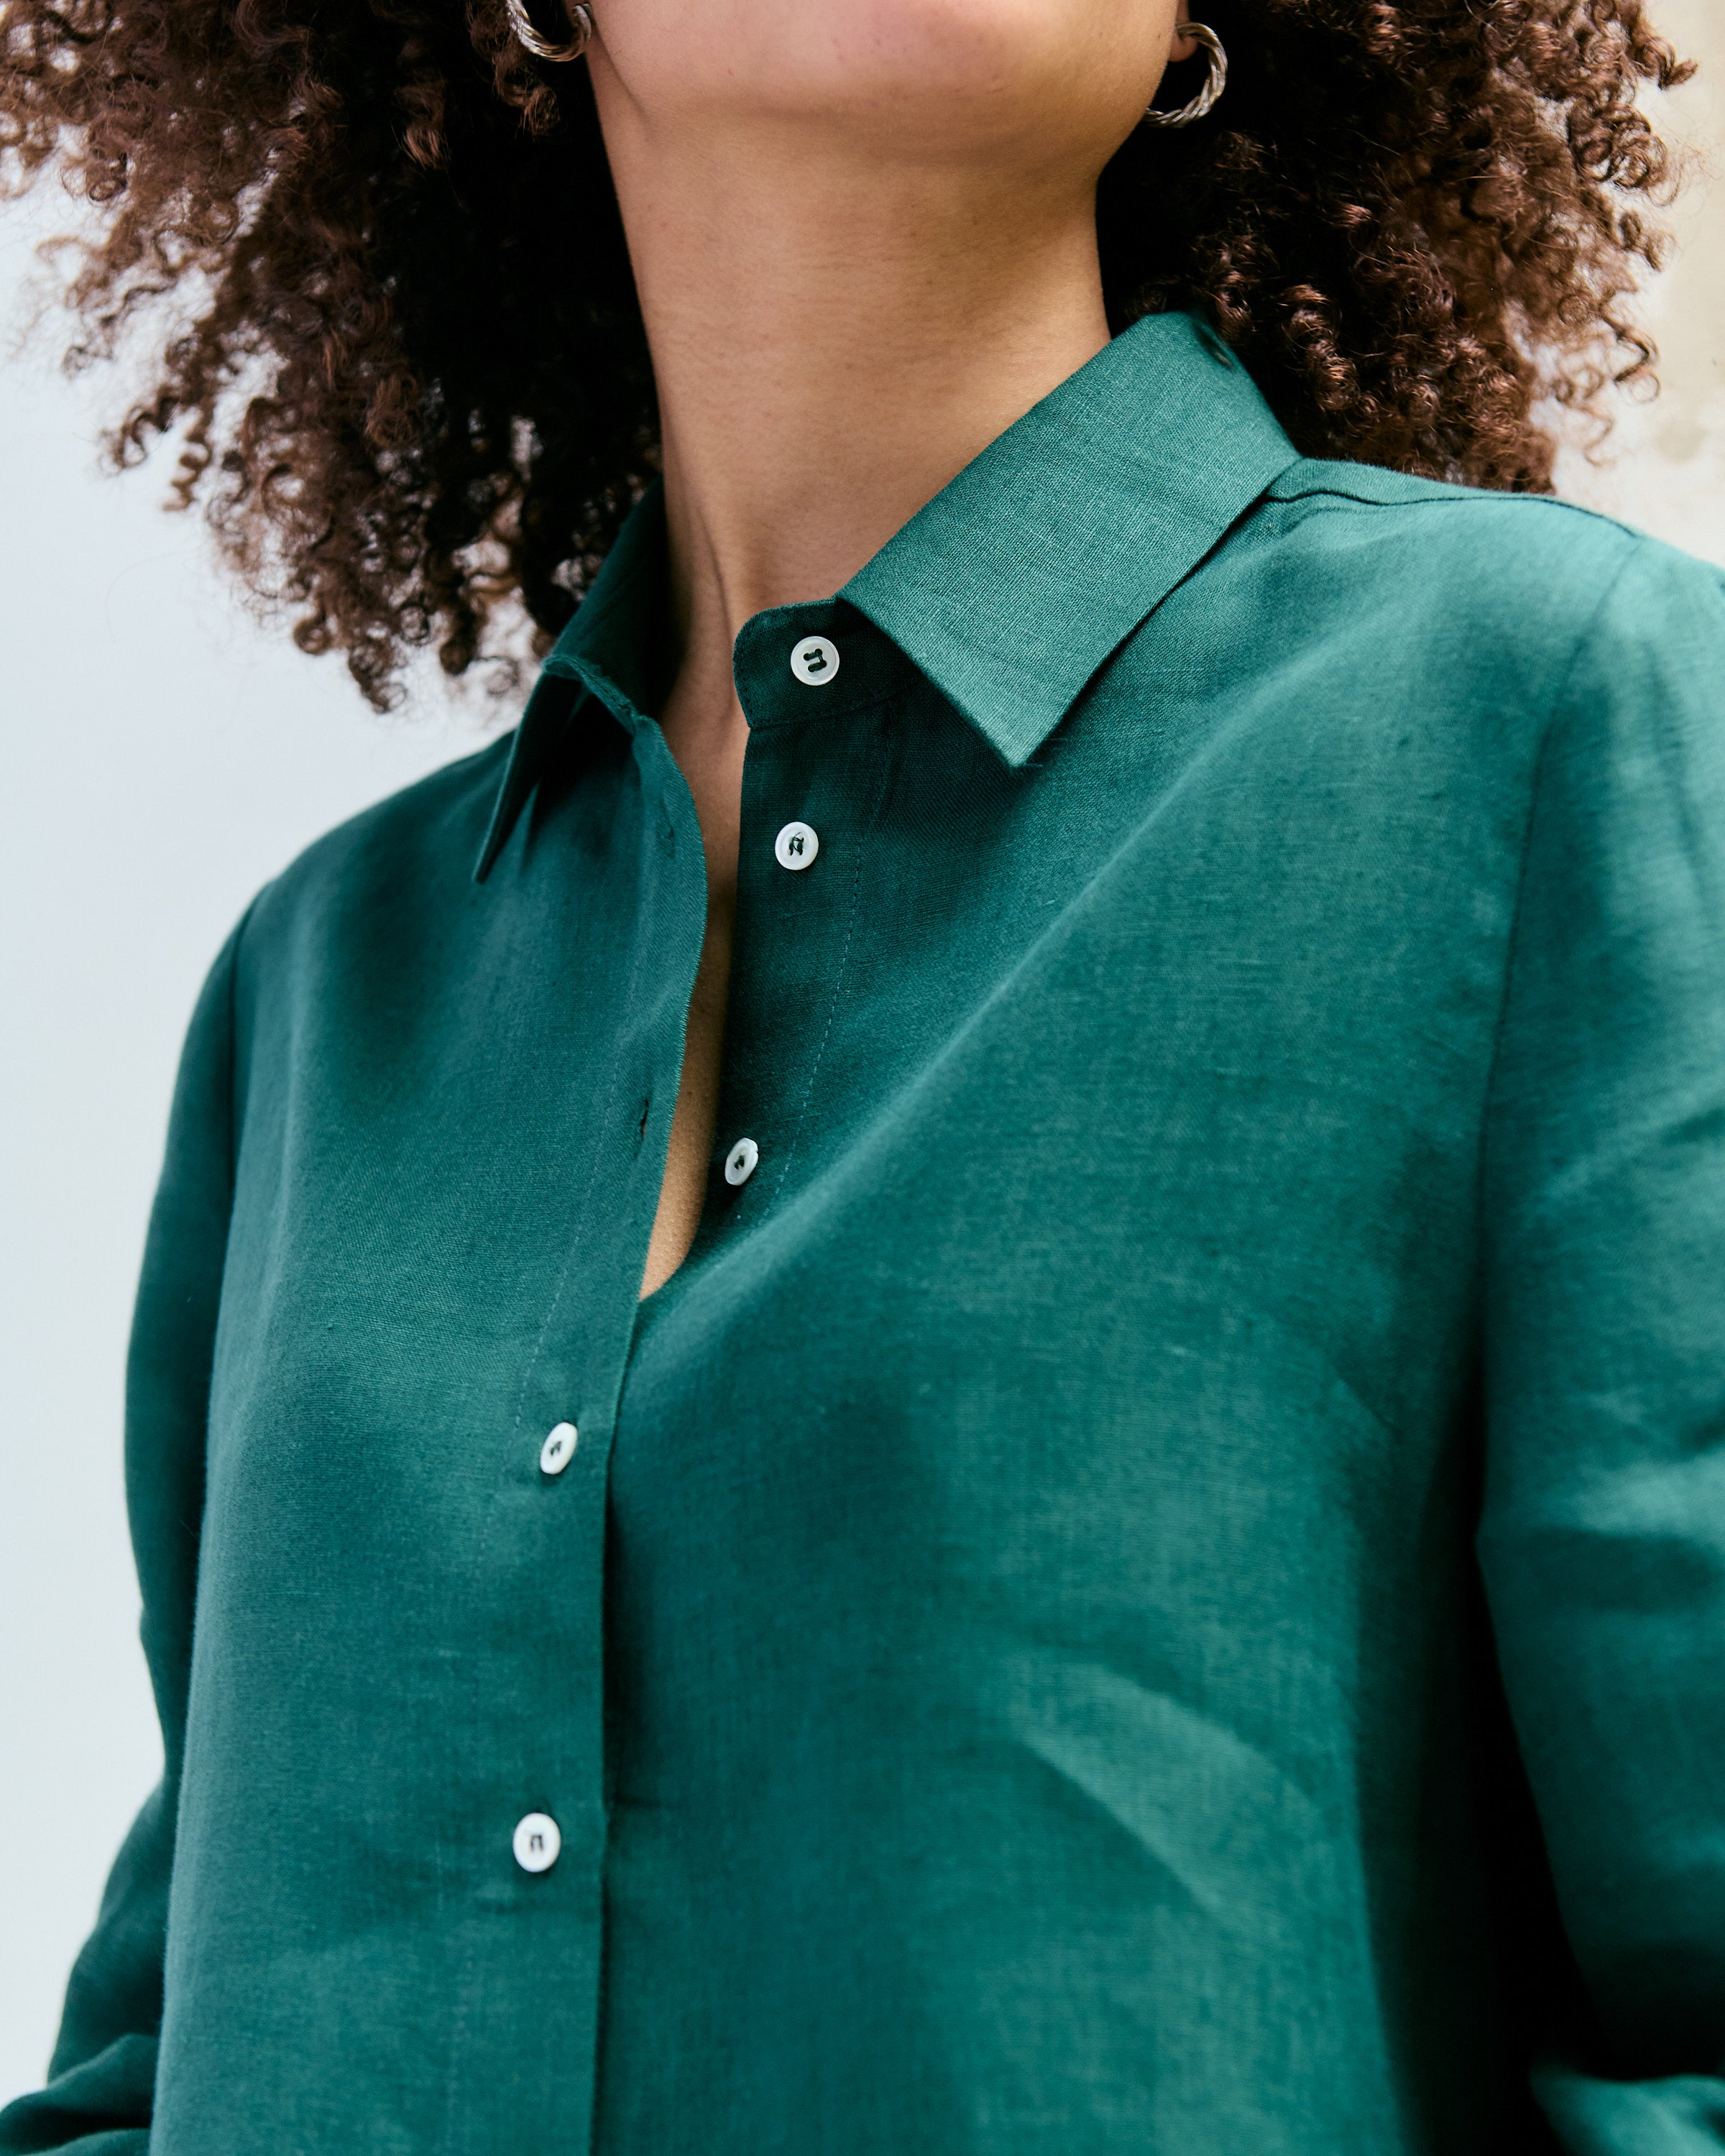 Detail of a green linen shirt.